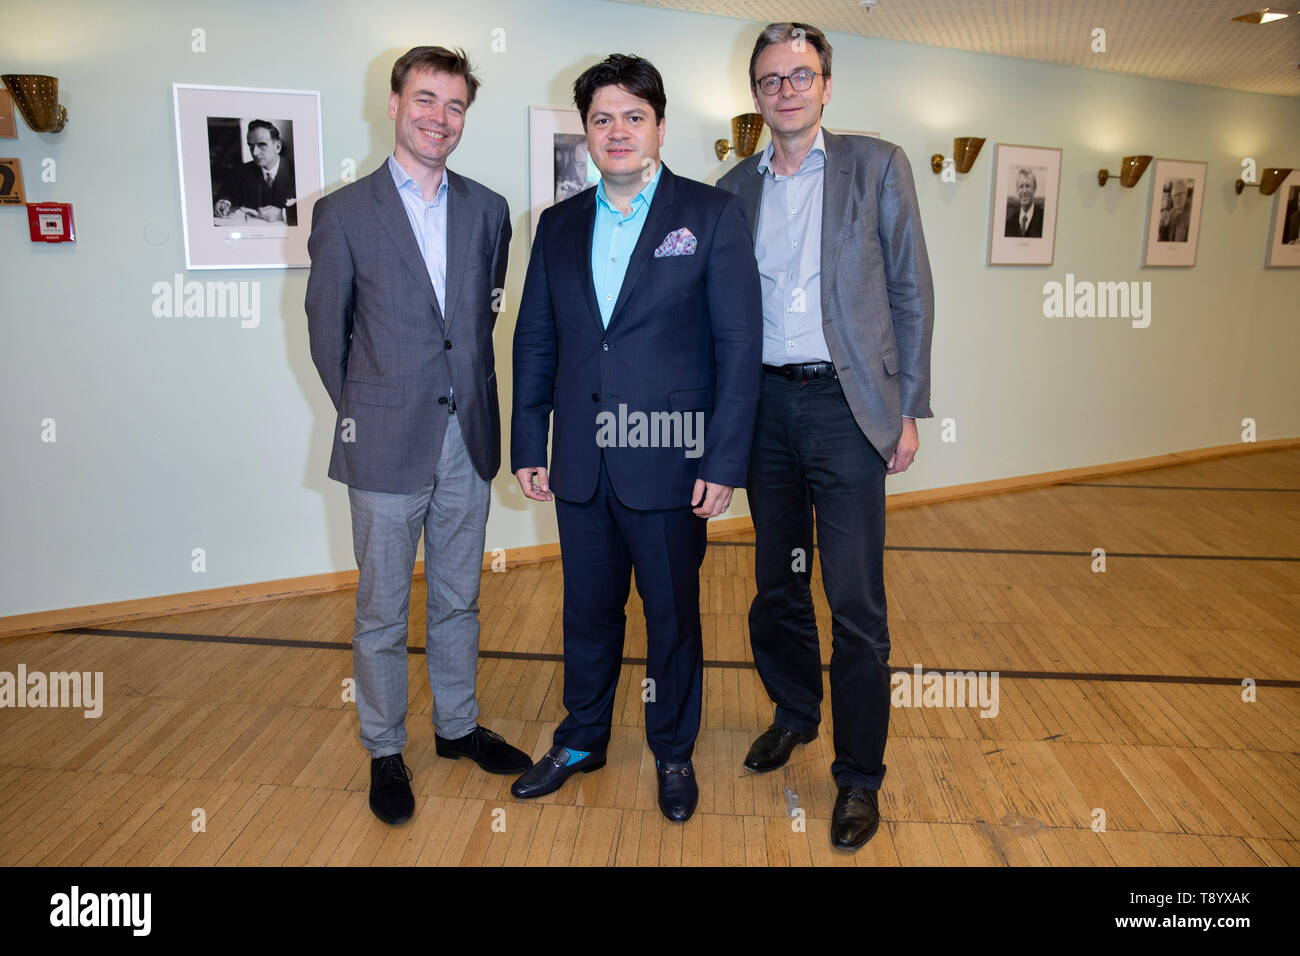 Siegwald Bütow, Cristian Măcelaru, Christoph Stahl beim Photocall im Funkhaus Wallrafplatz WDR-am. Köln, 14.05.2019 Banque D'Images